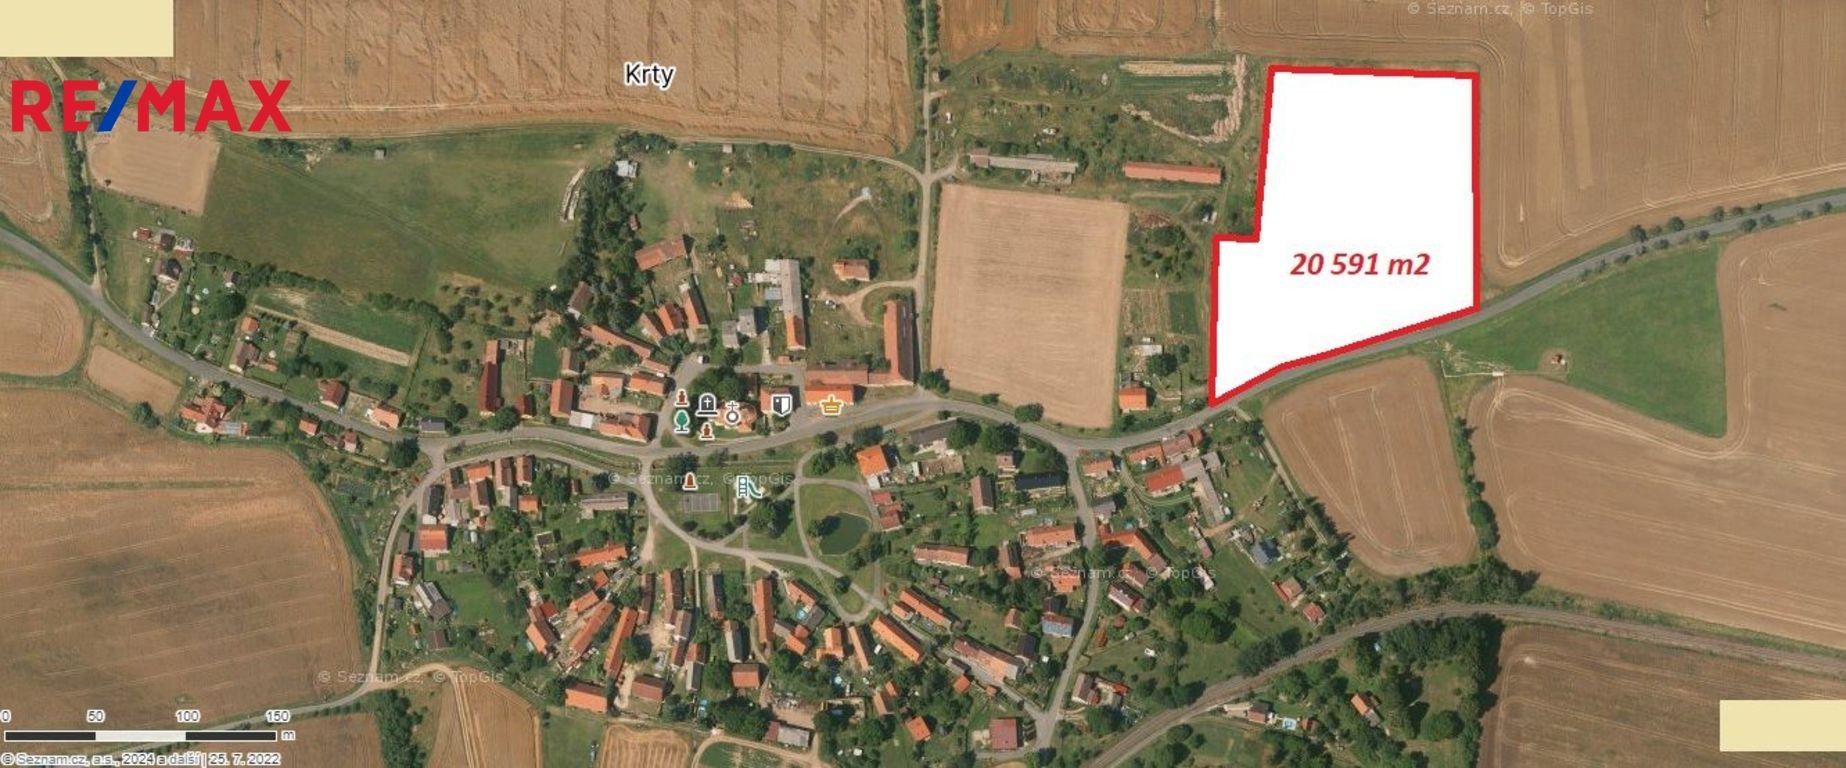 Komerční pozemky, Krty, 20 591 m²